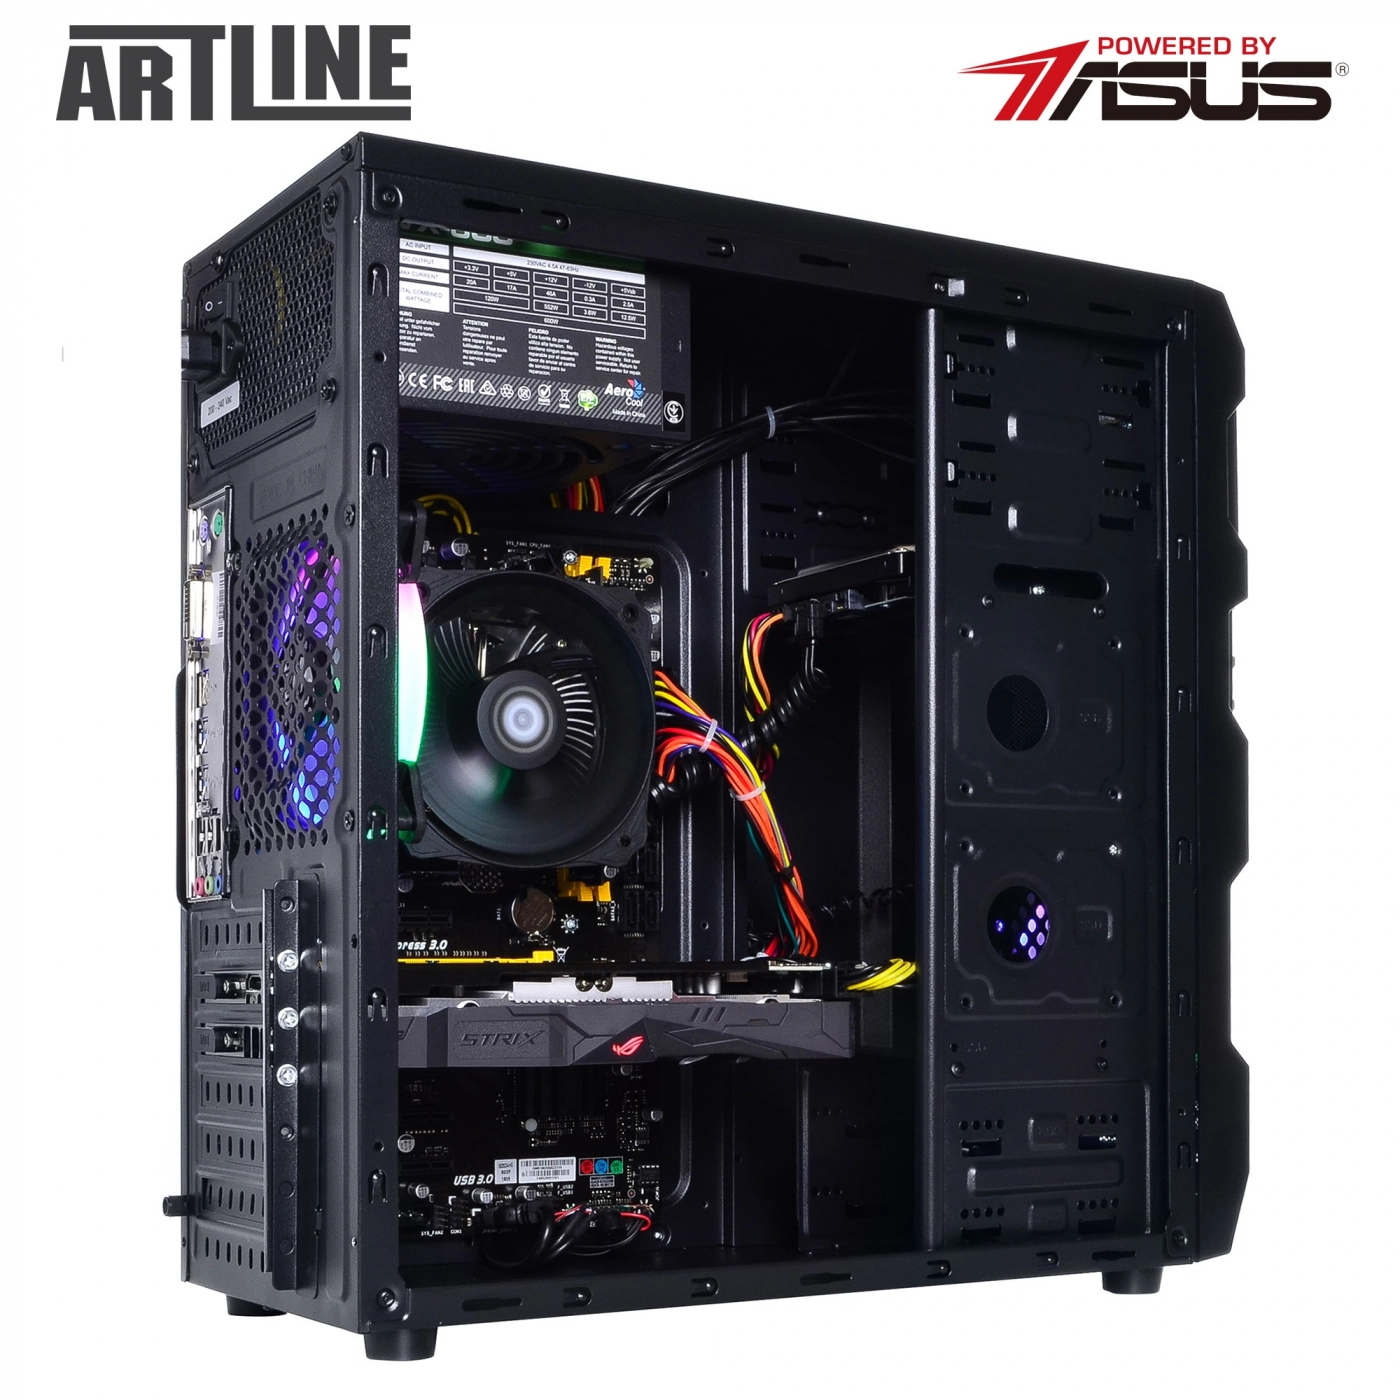 Купить Компьютер ARTLINE Gaming X47v32 - фото 9